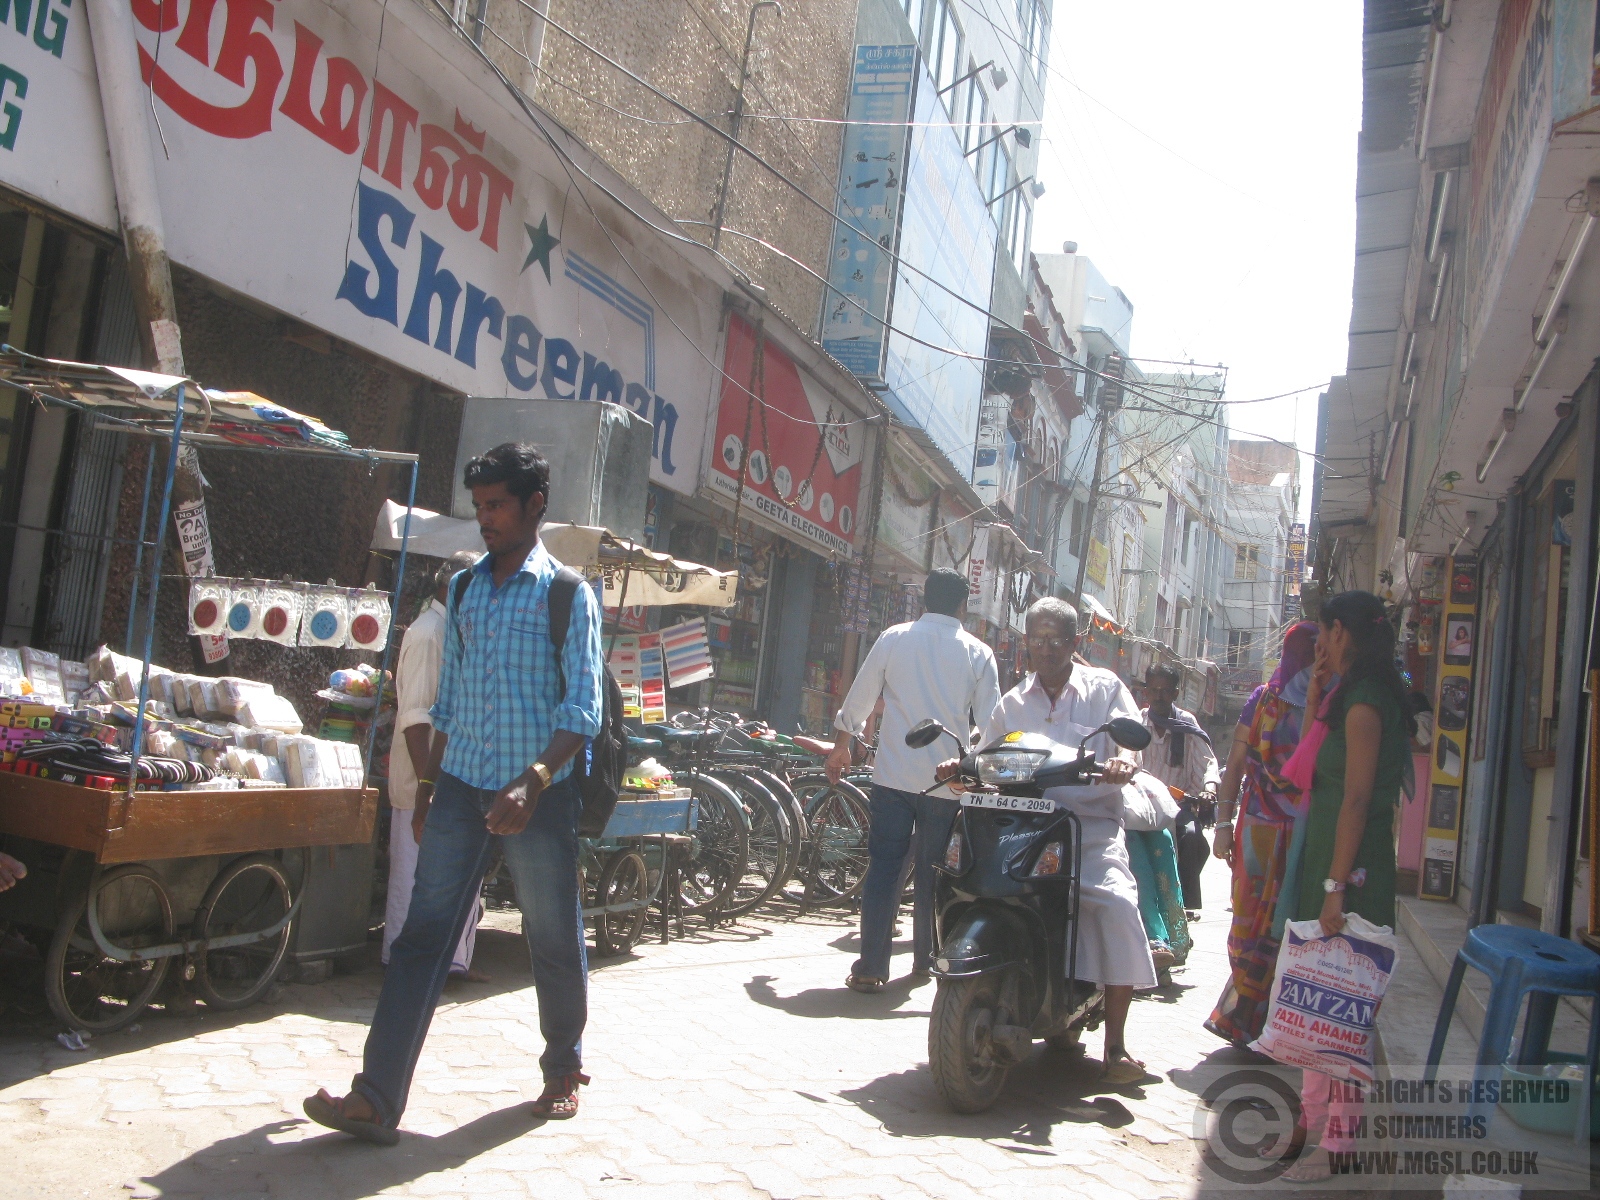 Typical scruffy street in Madurai